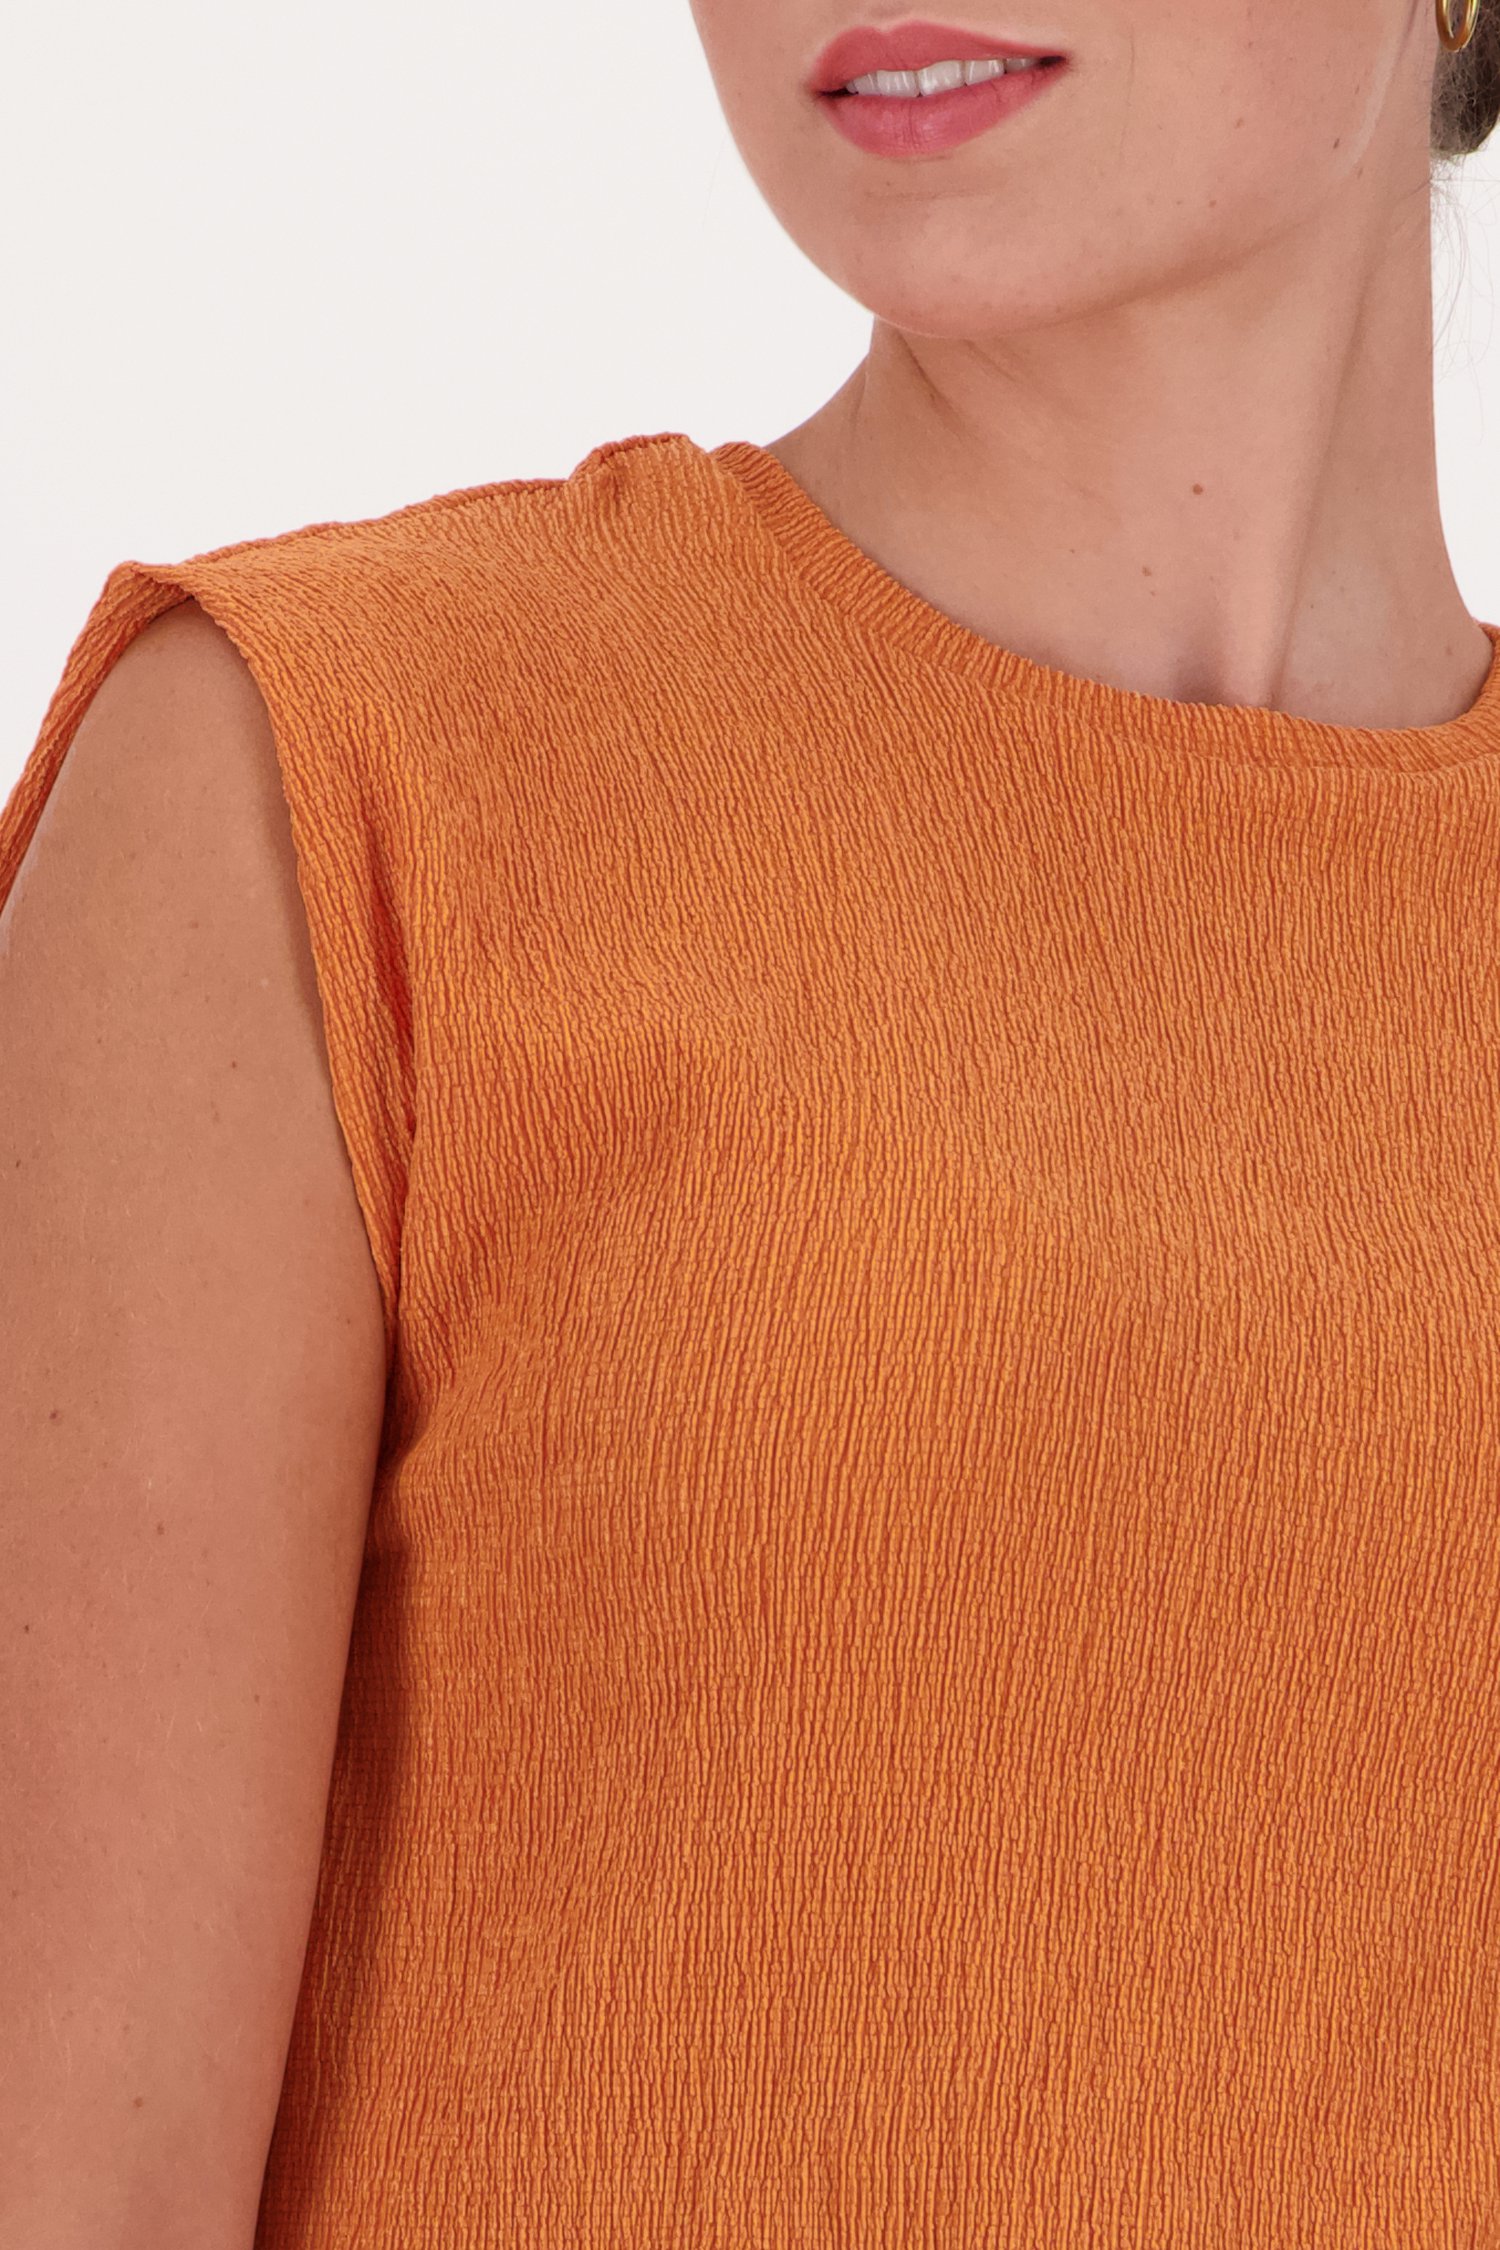 T-shirt sans manches orange de Liberty Island pour Femmes